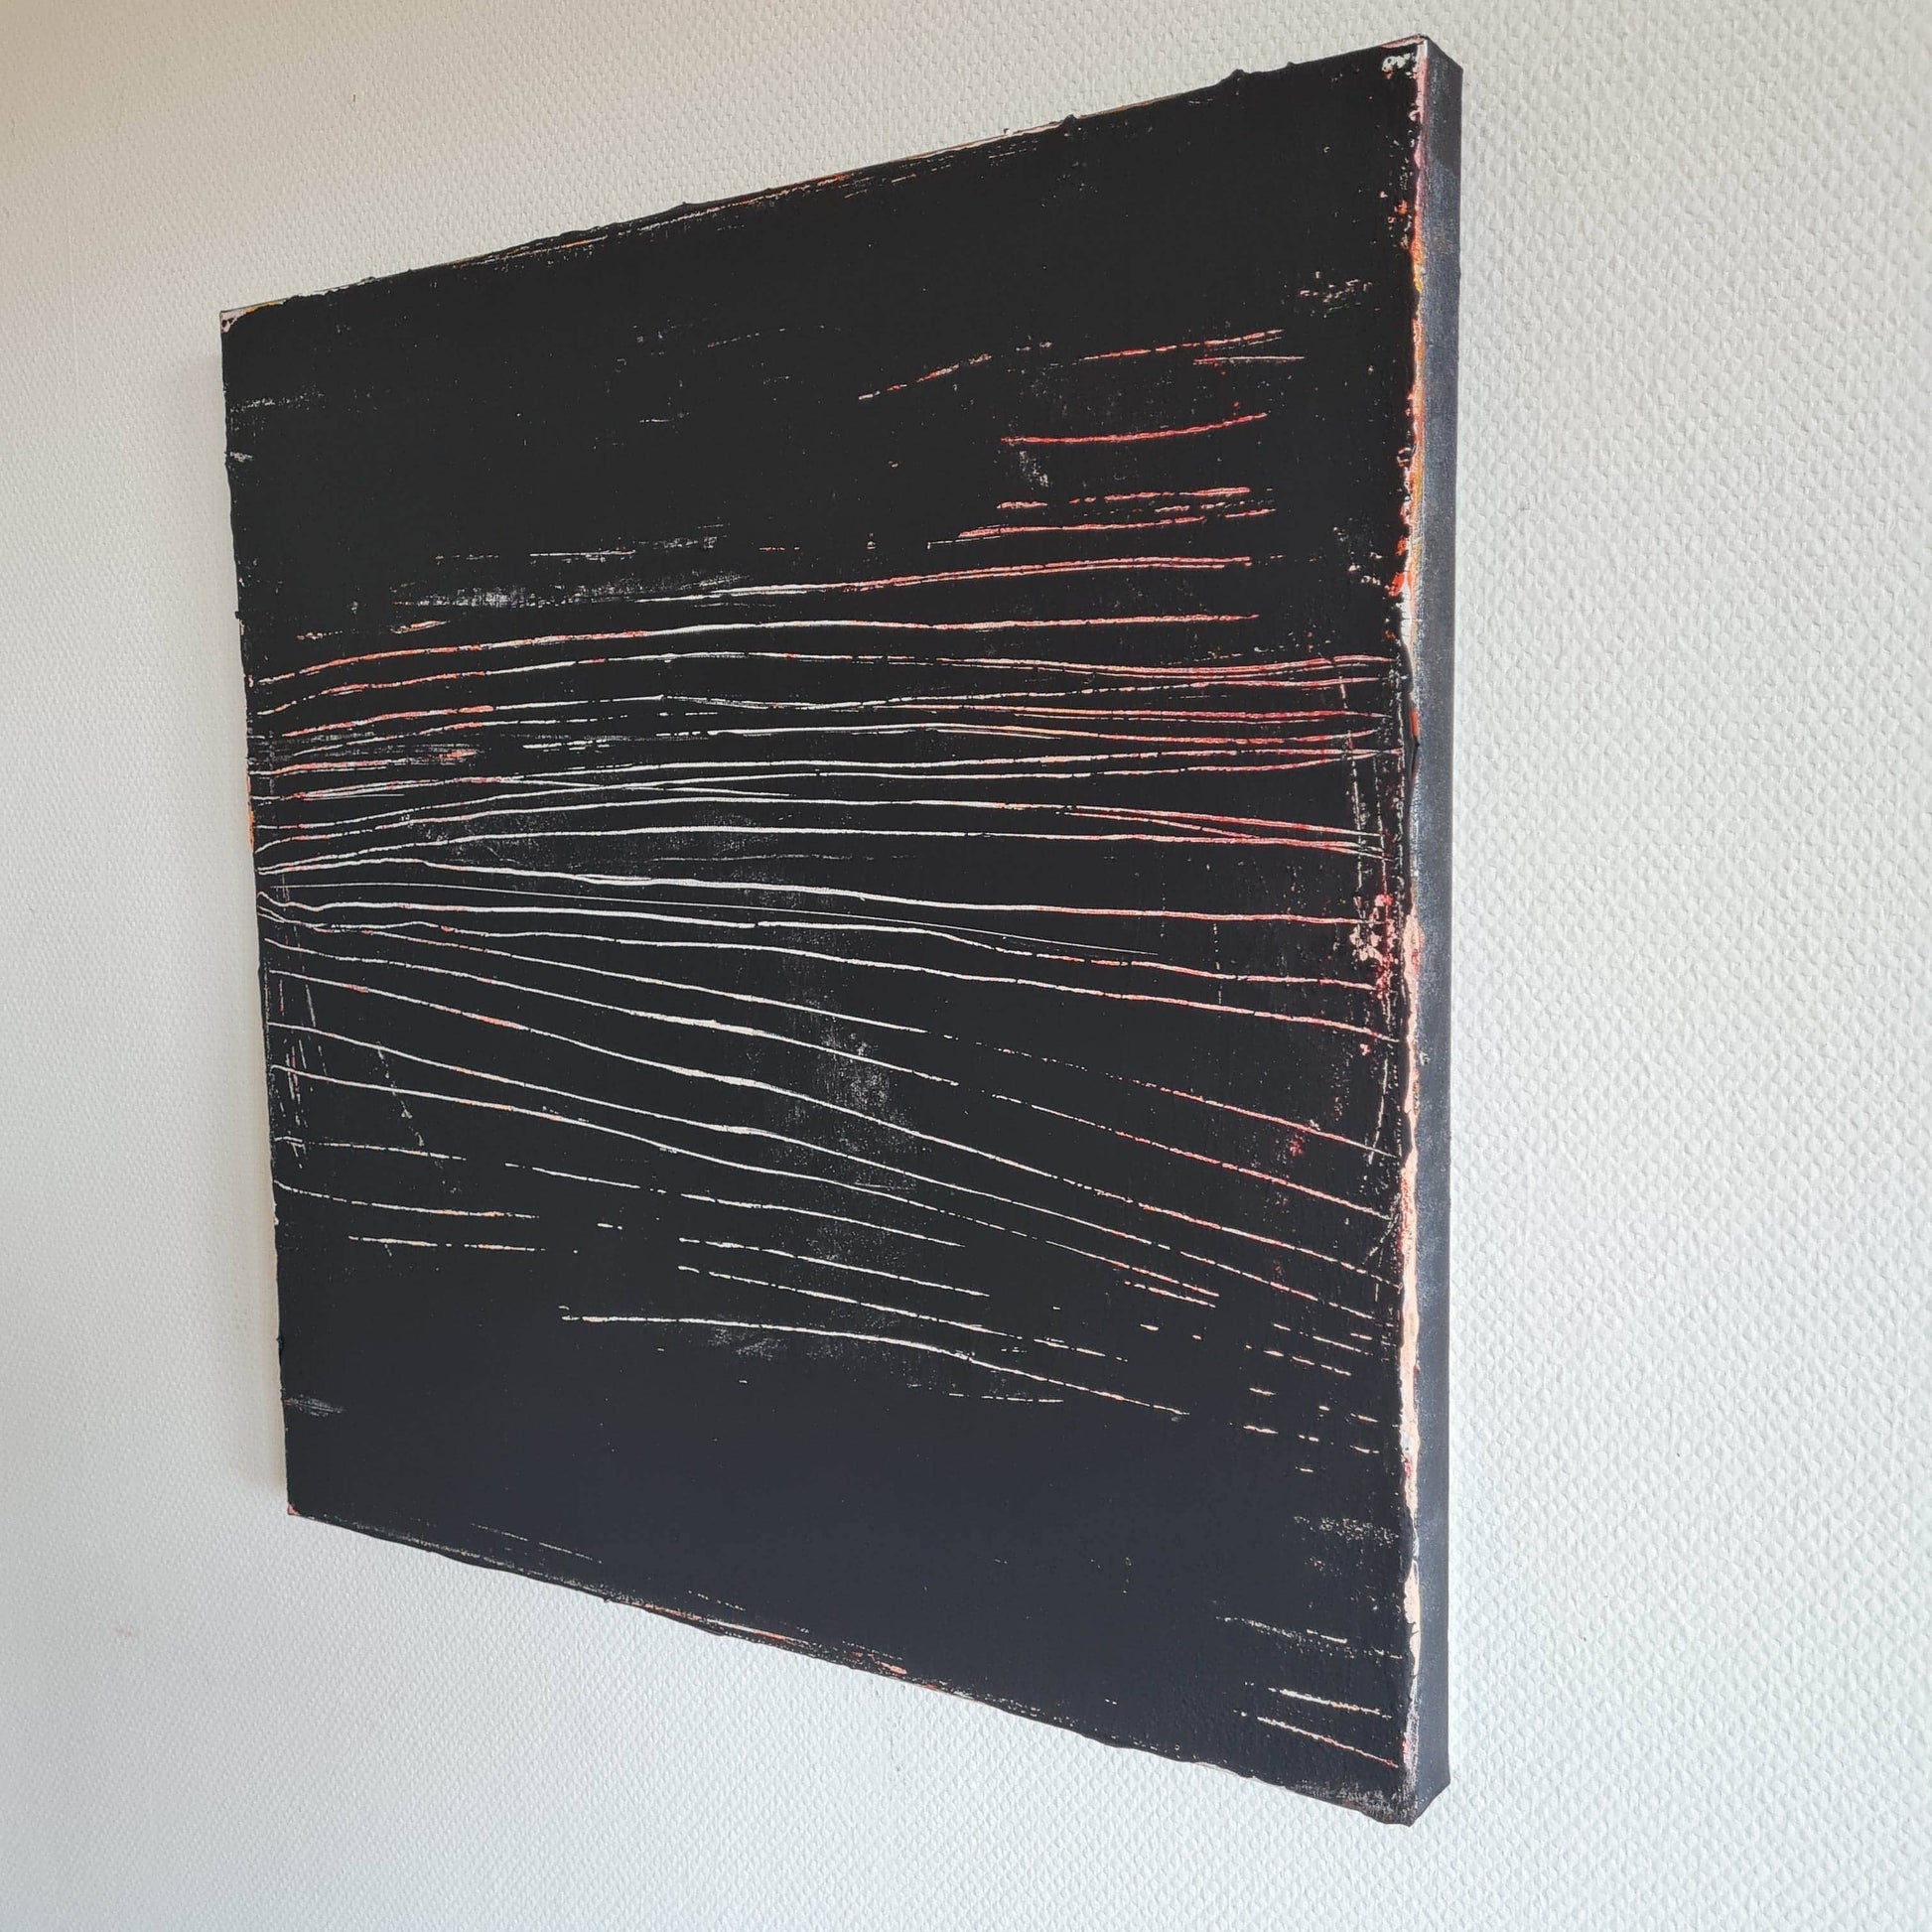  vorhandenes Unikat: Immer dem Weg entlang / 60 x 60 cm / schwarzweiss  abstrakte acrylbilder auf leinwand